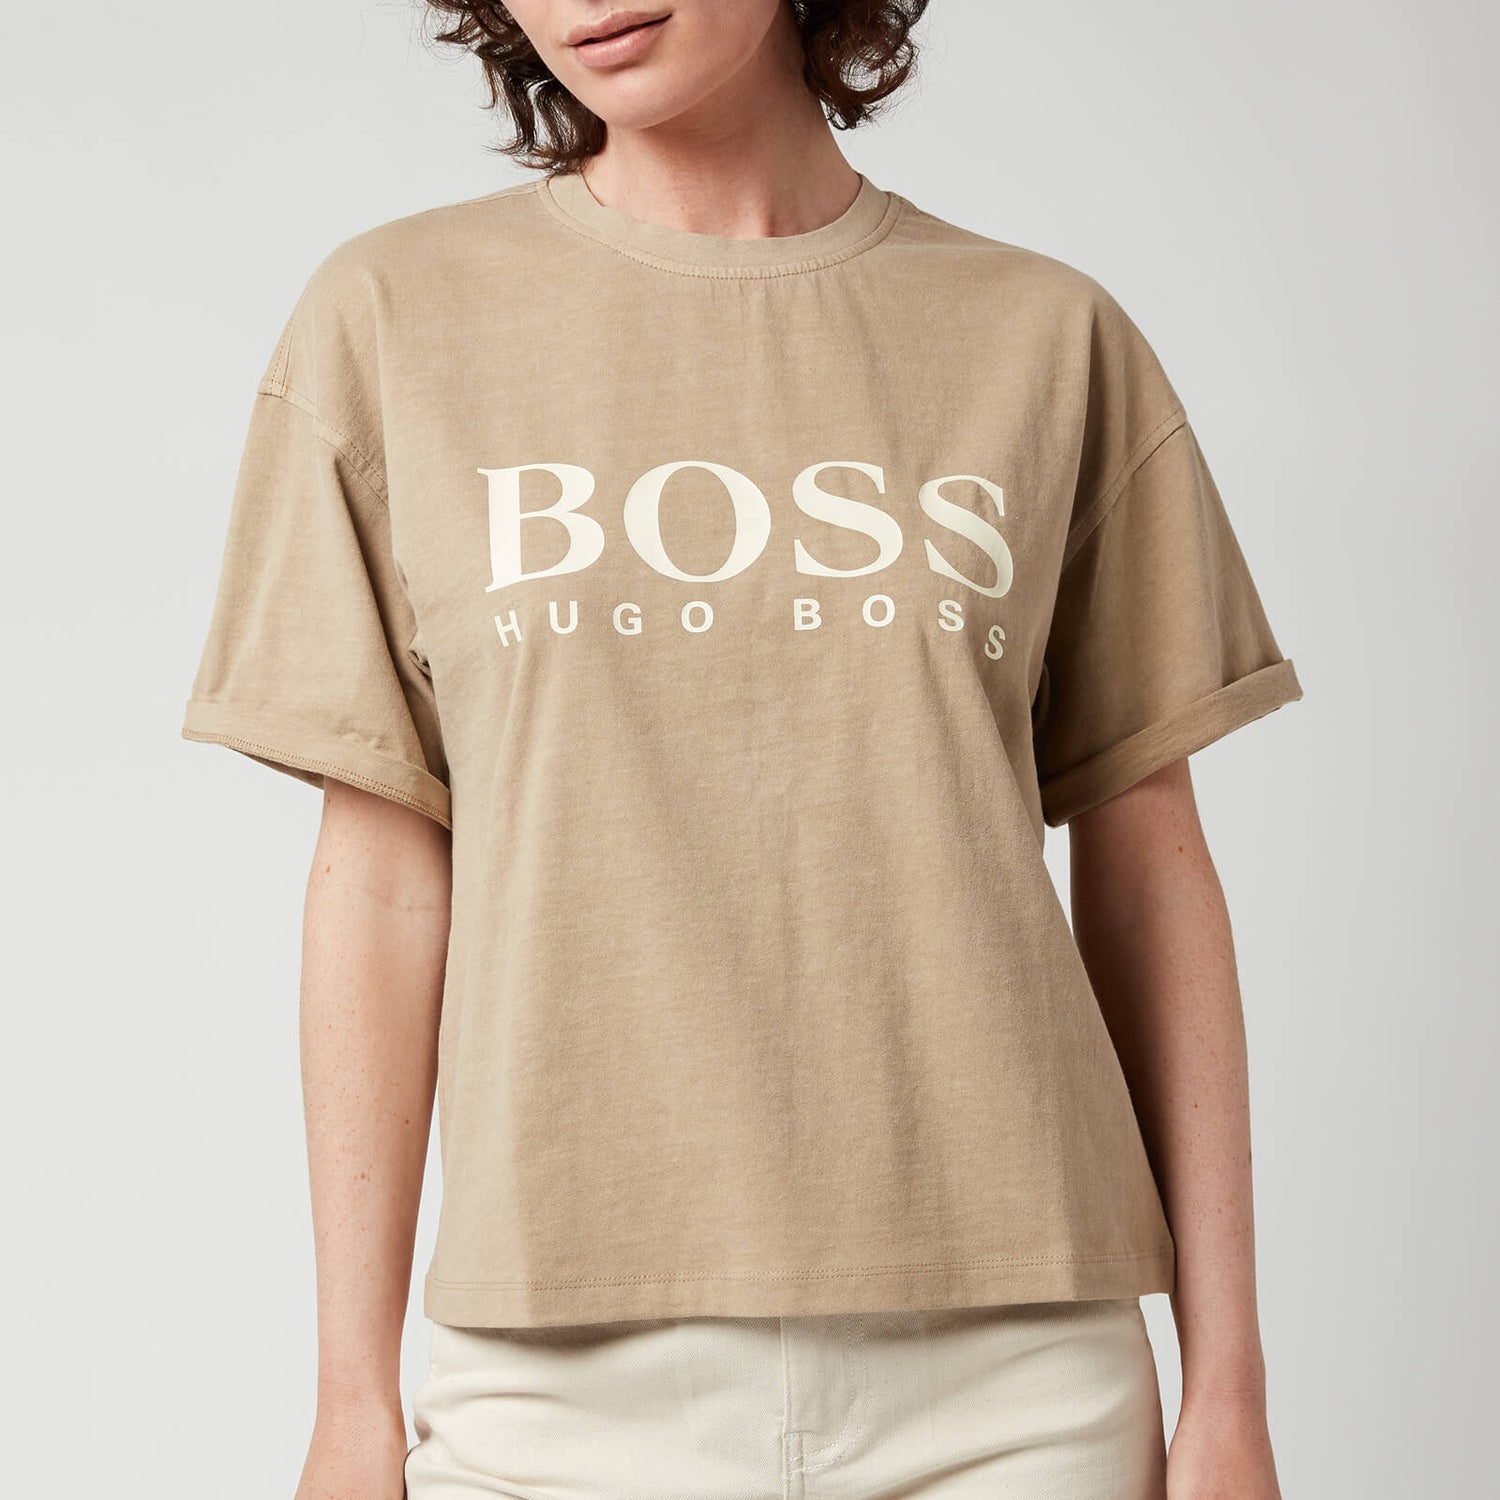 BOSS Women's Evina T-Shirt - Medium Beige